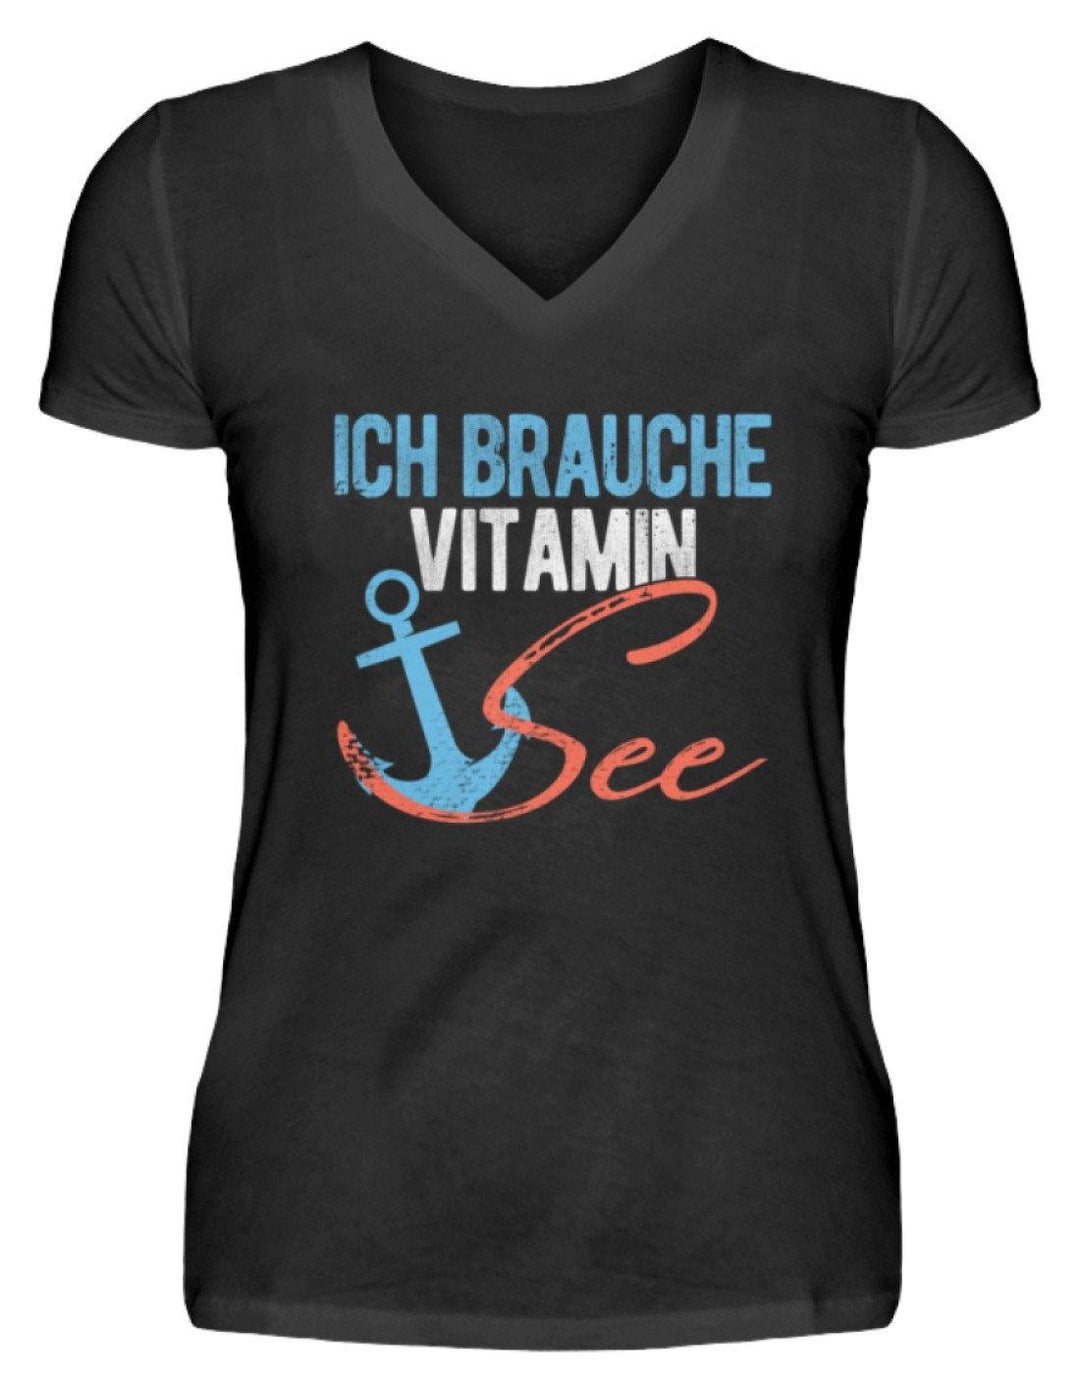 Vitamin See - Norddeutsch   - V-Neck Damenshirt - Words on Shirts Sag es mit dem Mittelfinger Shirts Hoodies Sweatshirt Taschen Gymsack Spruch Sprüche Statement